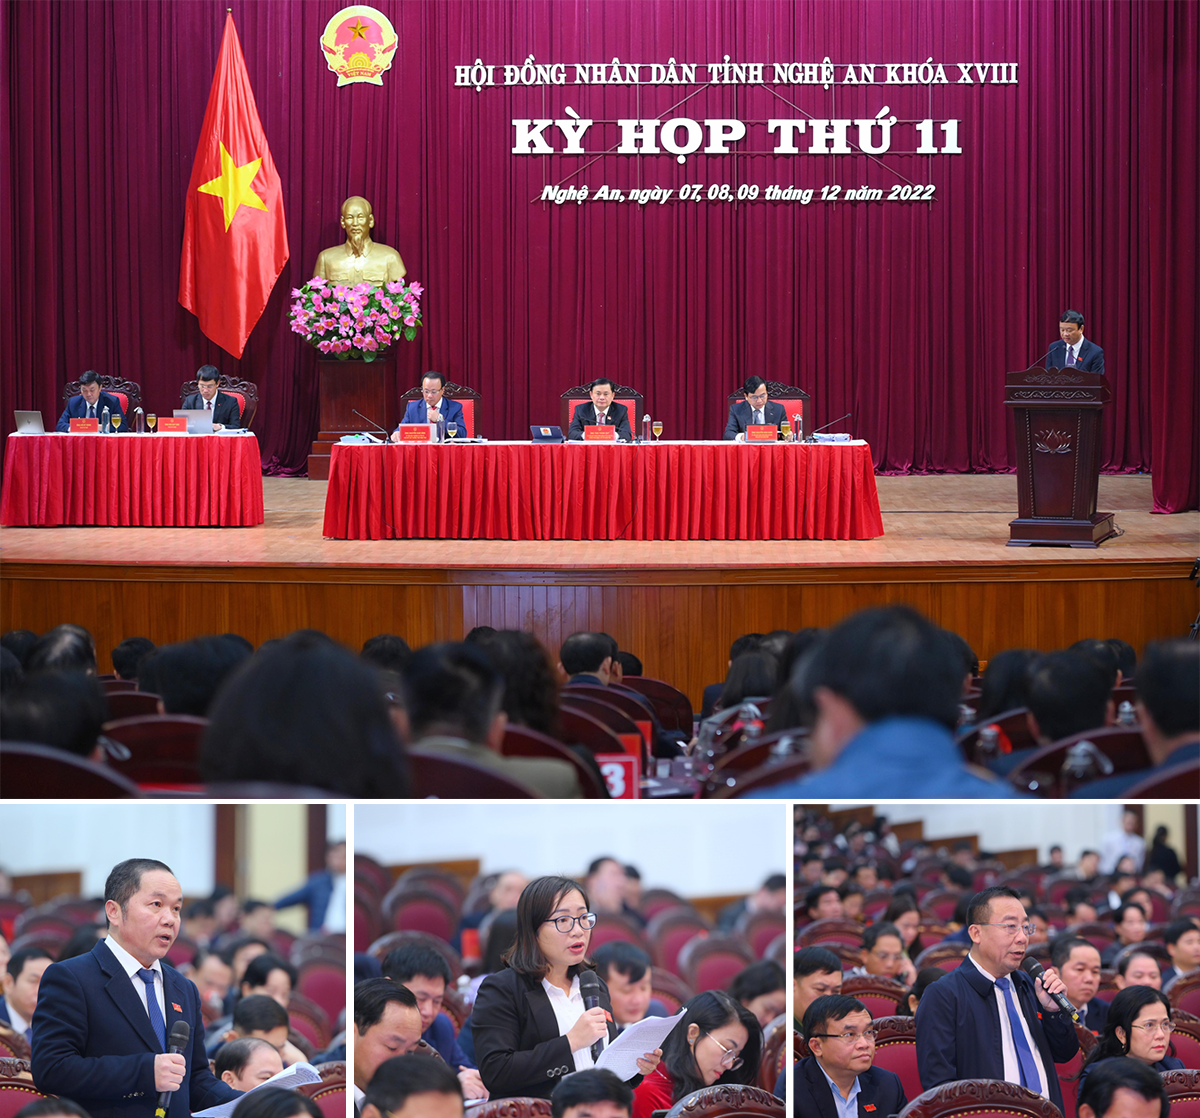 Chất vấn và trả lời chất vấn tại kỳ họp thứ 11, HĐND tỉnh Nghệ An khóa XVIII.